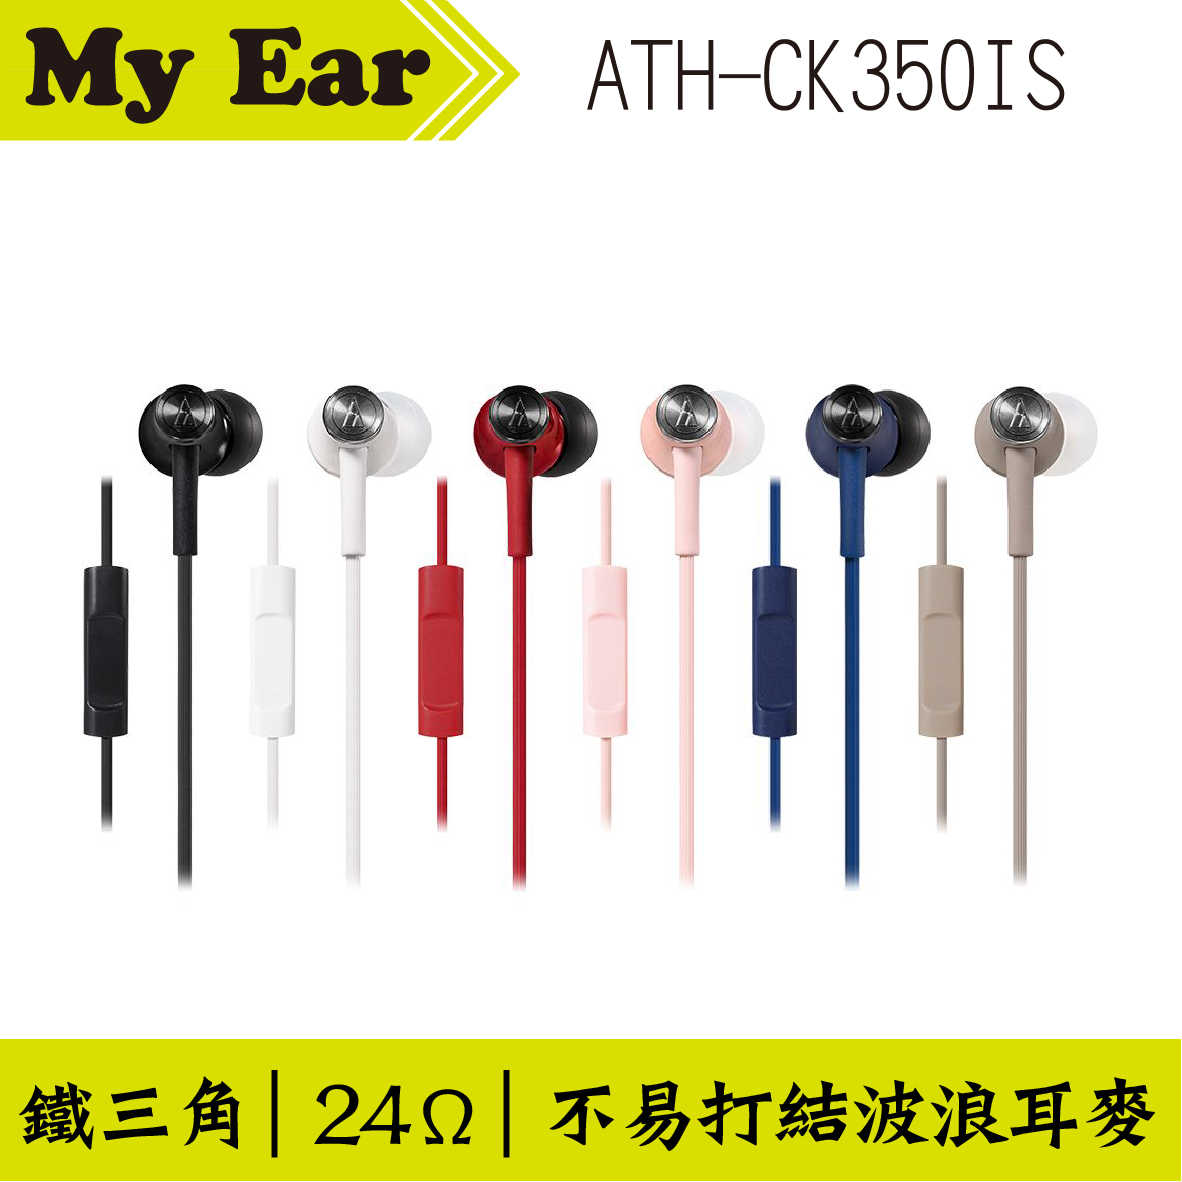 鐵三角 ATH-CK350IS 耳機麥克風 多色可選  | My Ear 耳機專門店